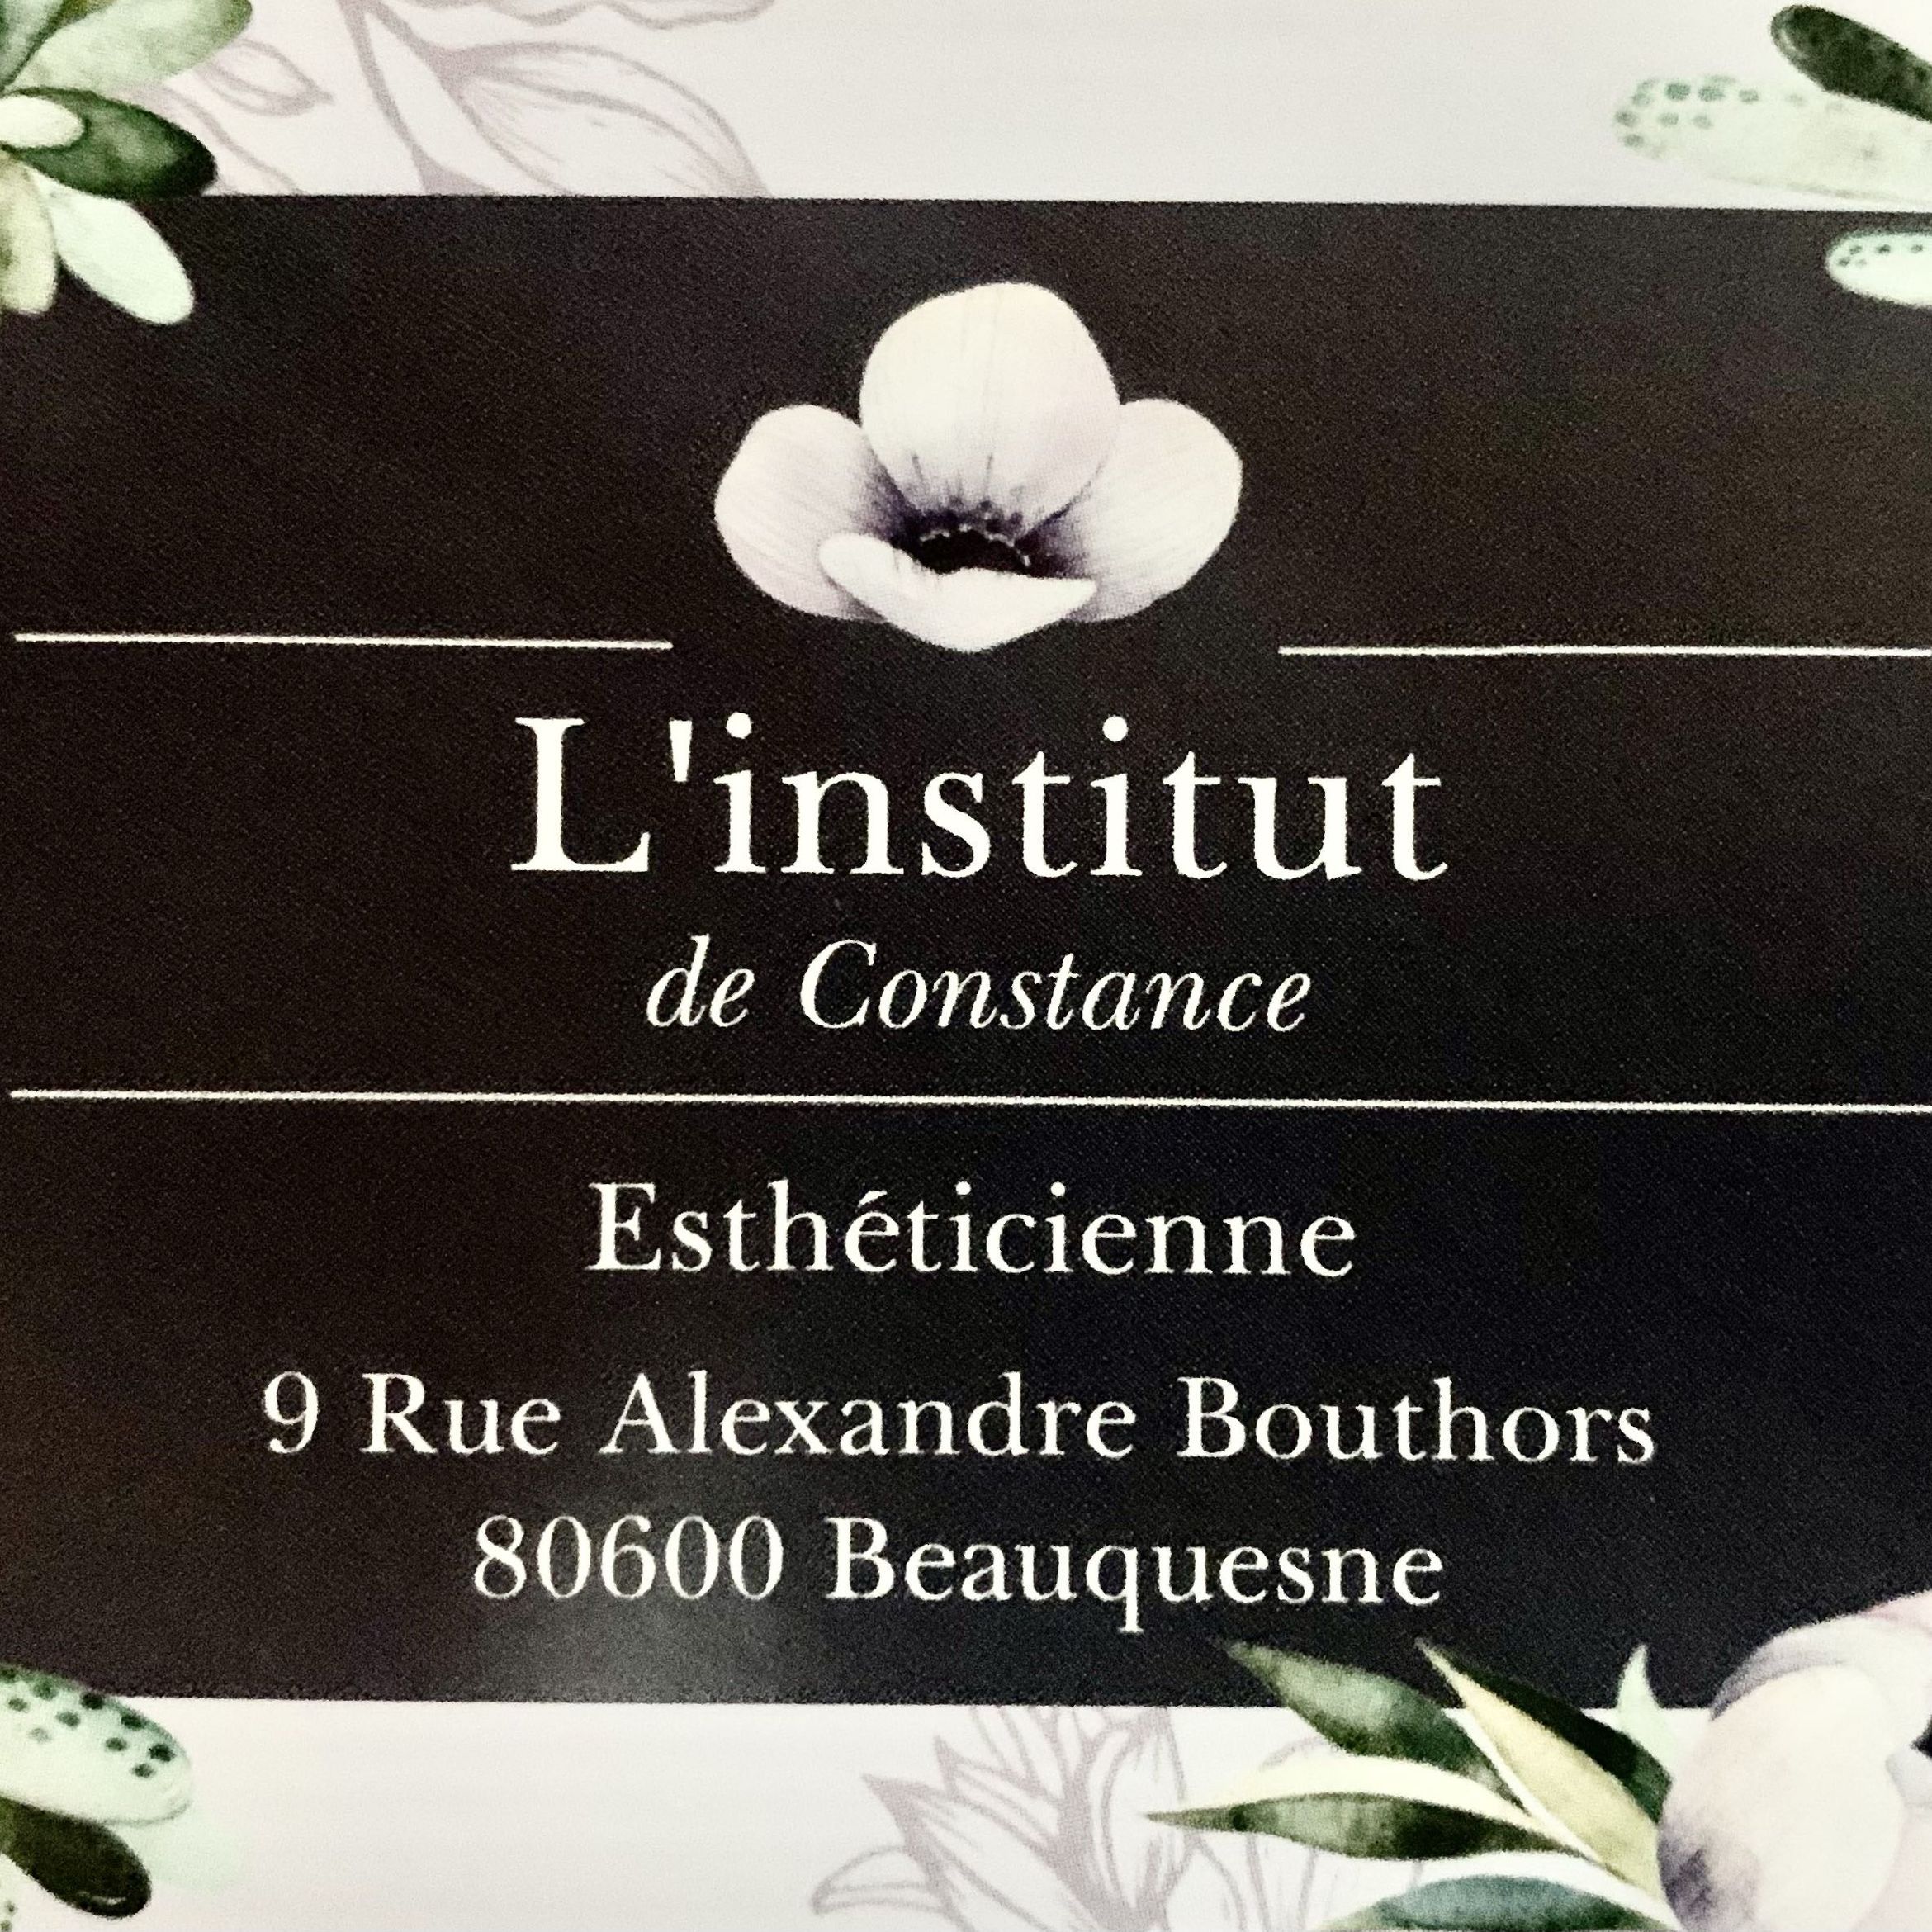 L’institut de Constance, 9 Rue Alexandre Bouthors, 80600, Beauquesne